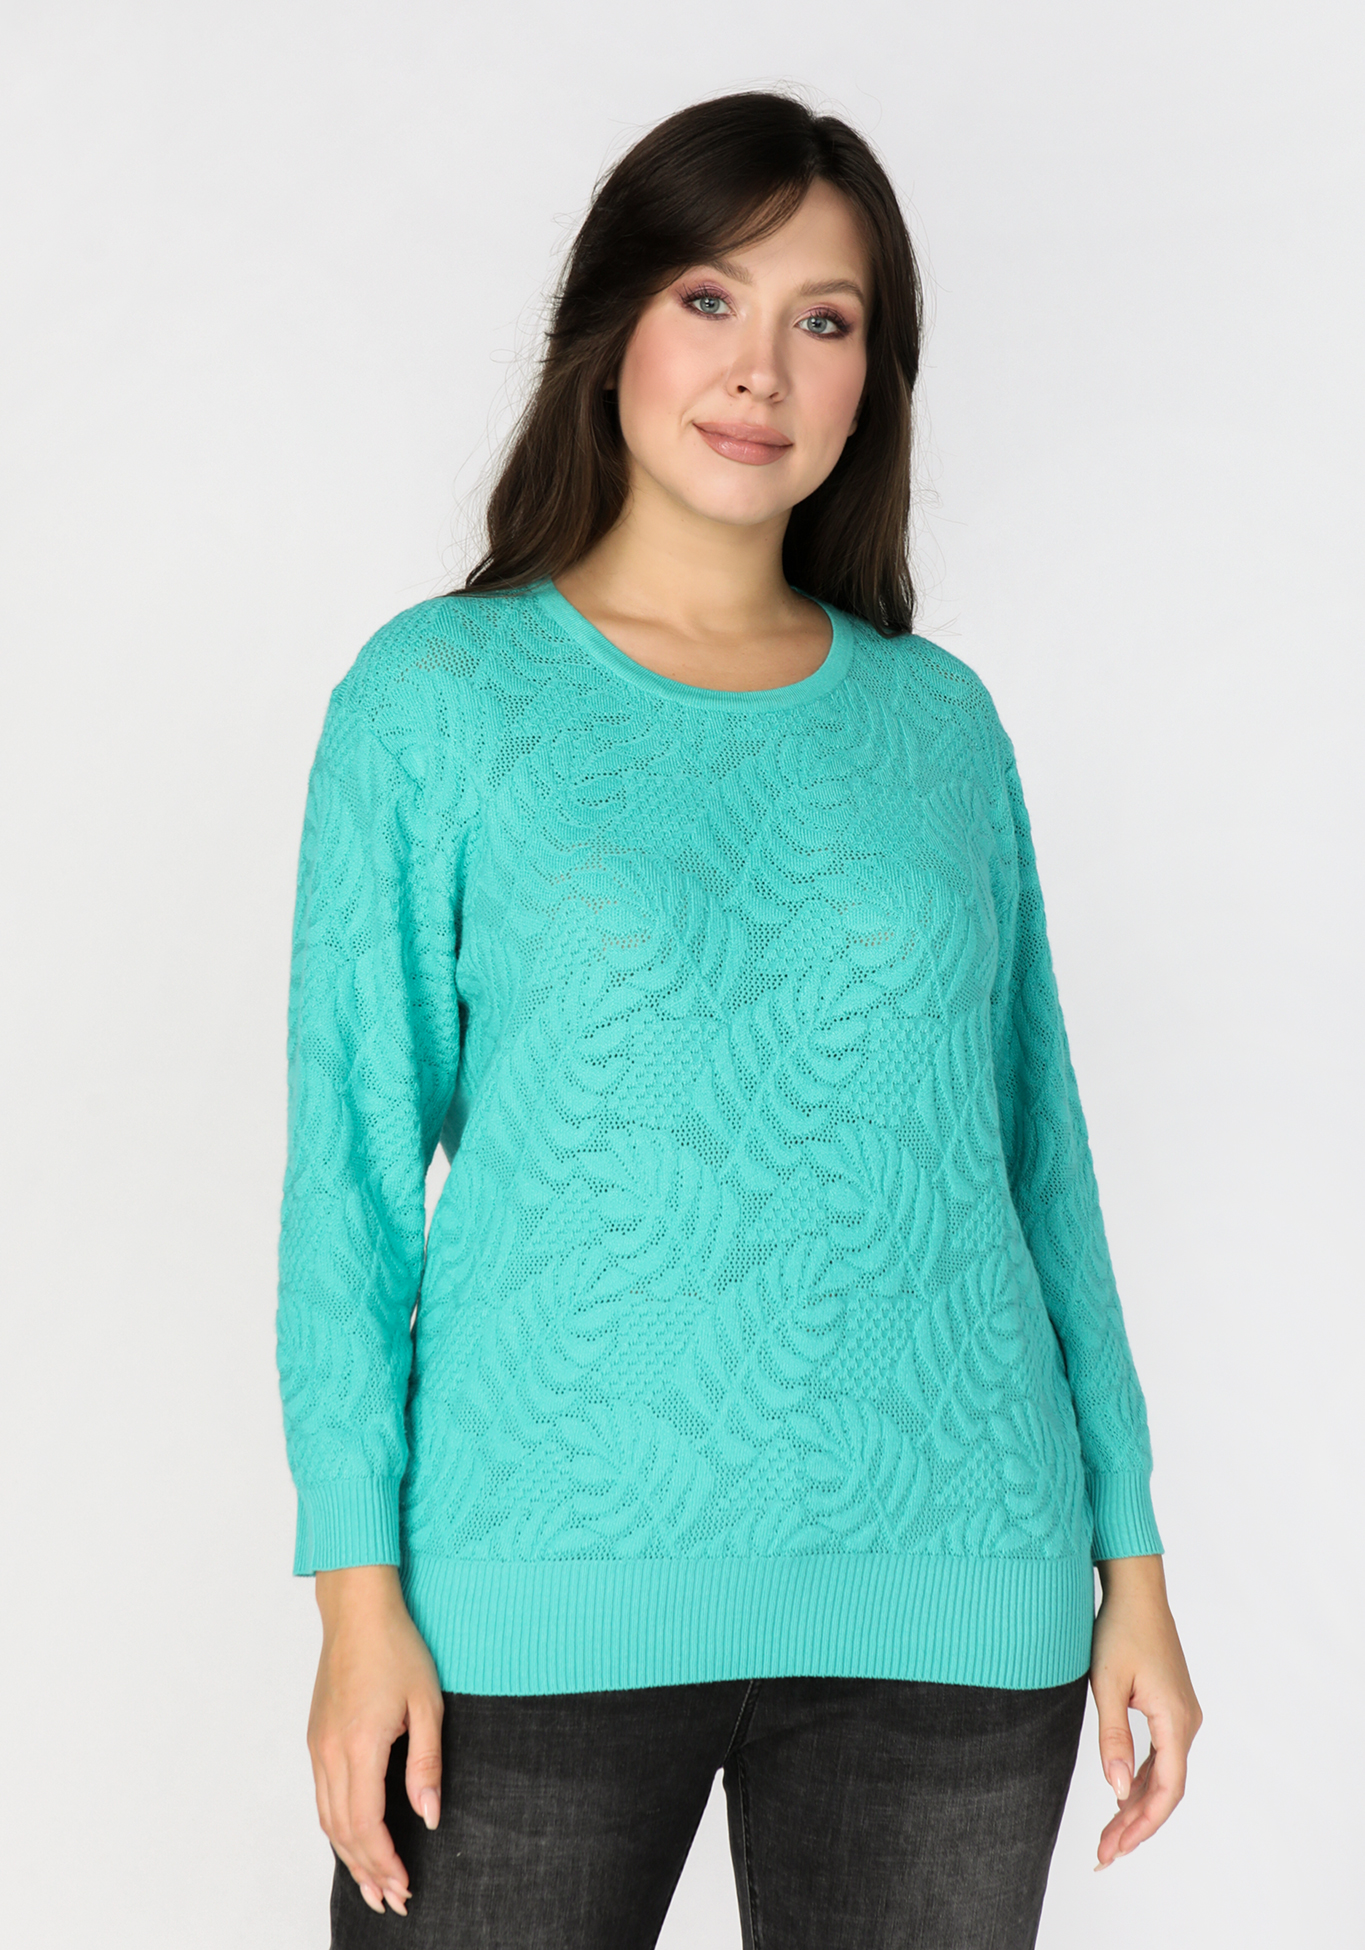 Пуловер с цветочным рисунком «Эльвира»